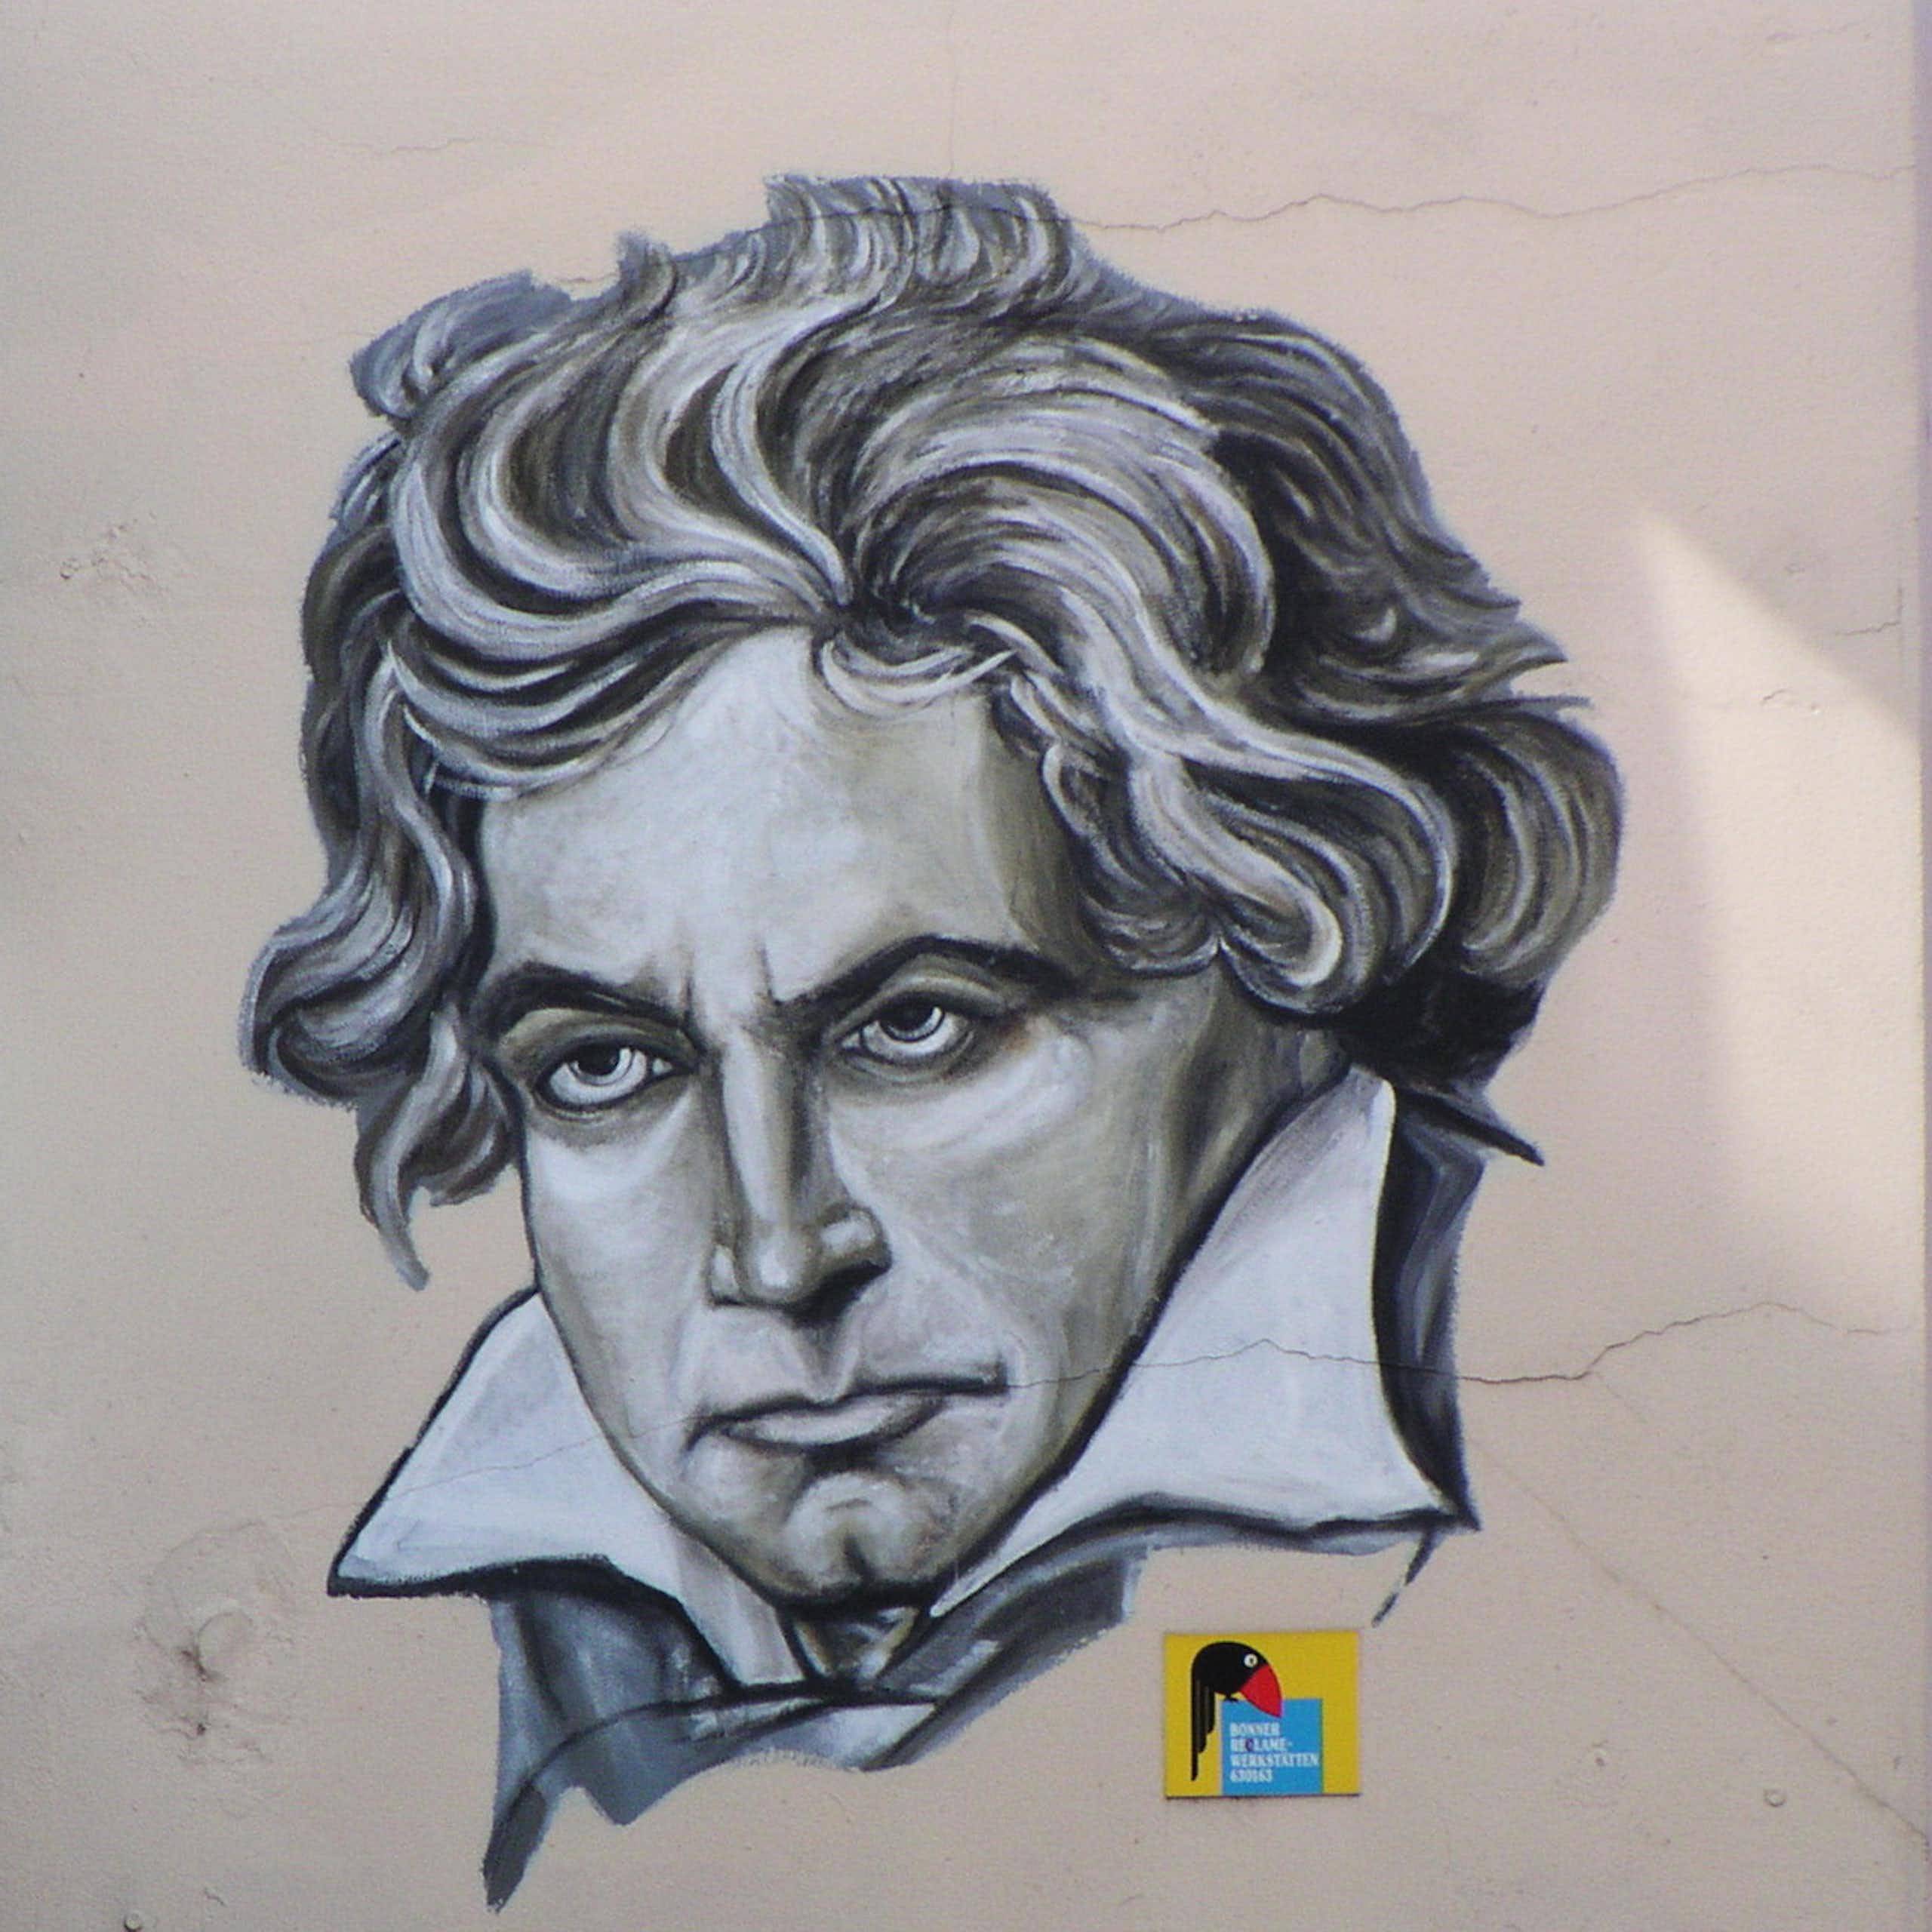 Un dibujo en la calle en Bonn hace referencia a la casa de Beethoven que se encuentra enfrente.